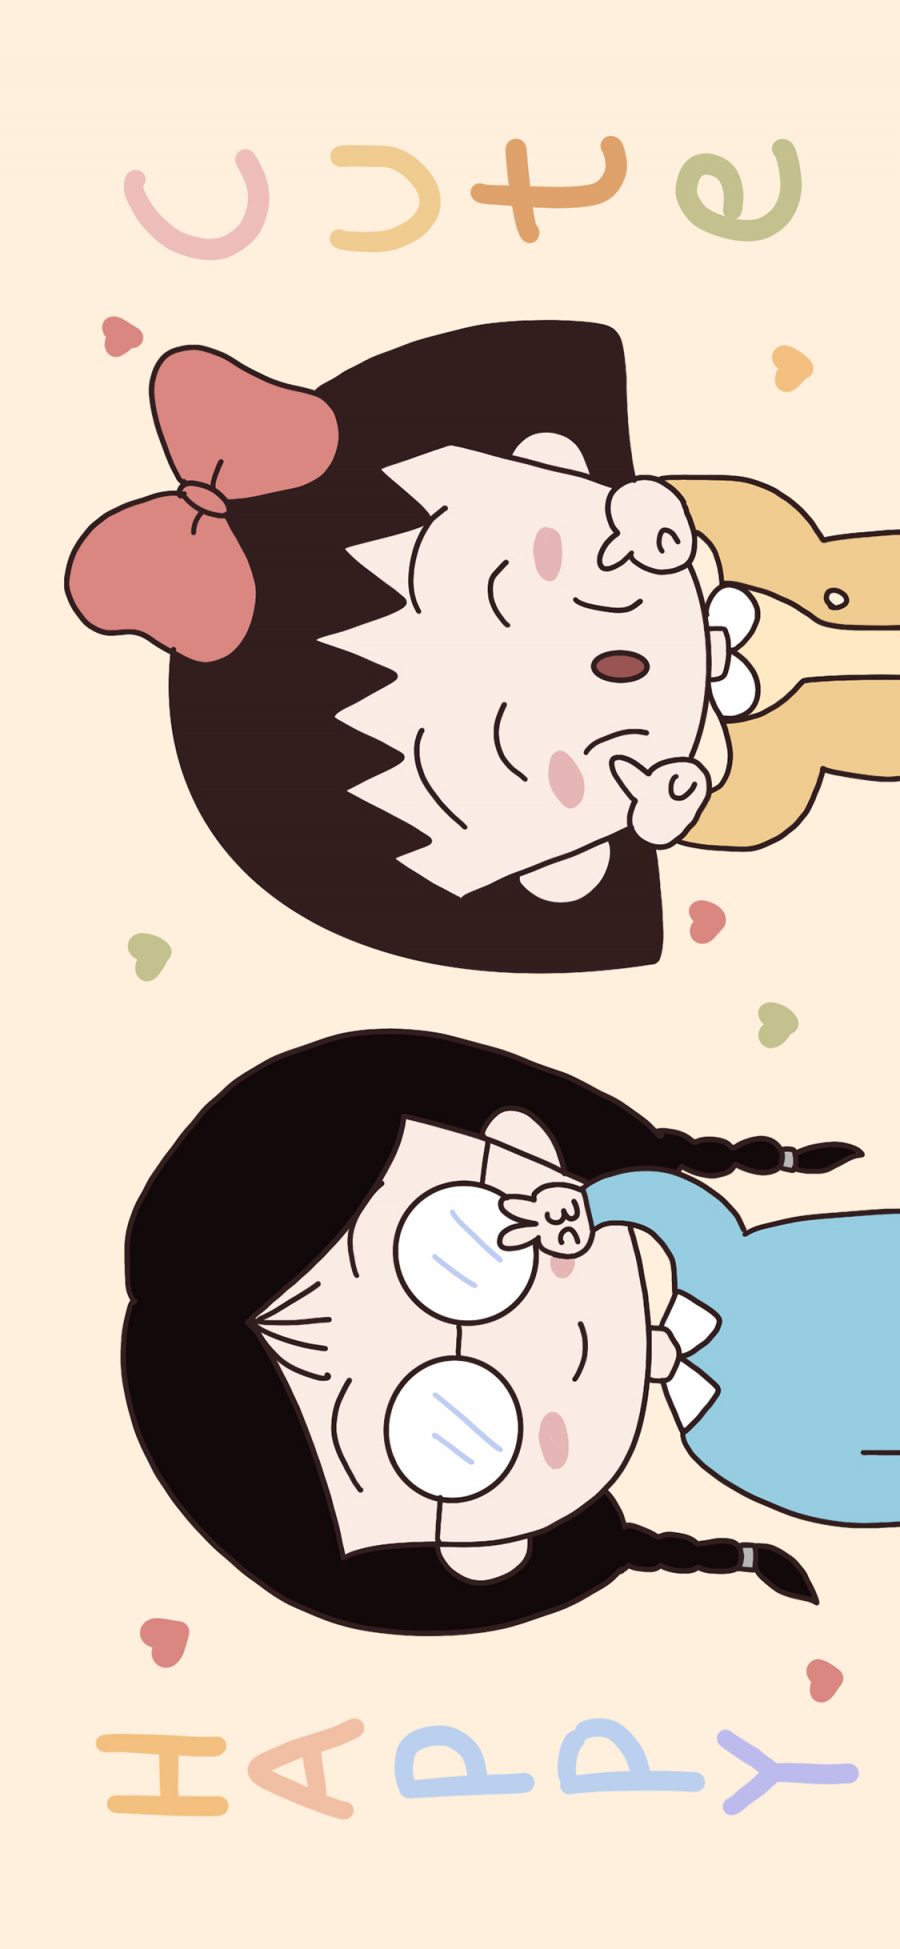 [2436×1125]樱桃小丸子 日本 动画 快乐 可爱 苹果手机动漫壁纸图片